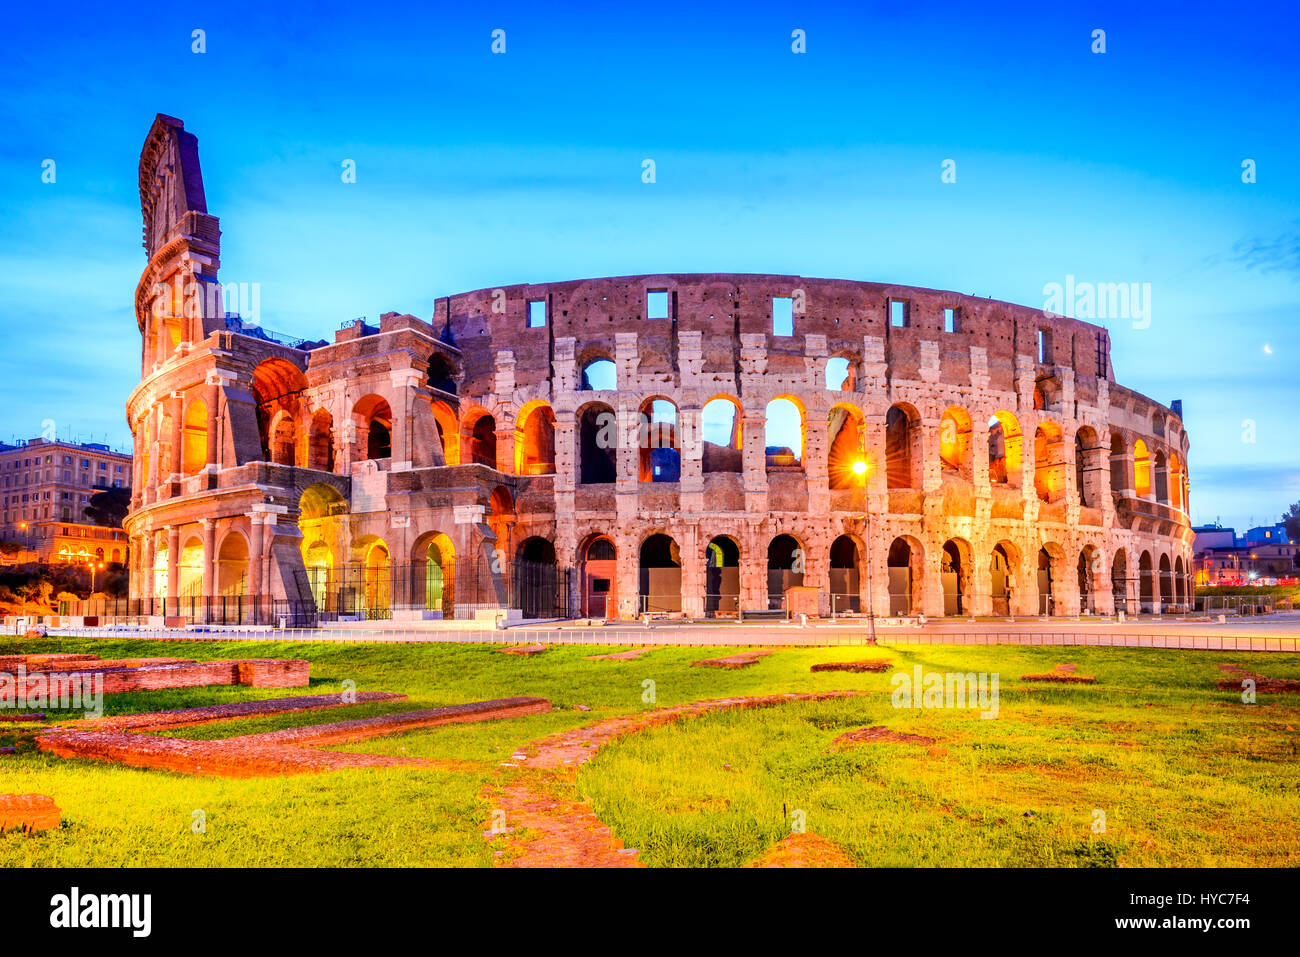 Roma, Italia. El Coliseo, el Coliseo o Anfiteatro Flavio, Coloseo más grande jamás construido símbolo de la antigua ciudad de Roma en el Imperio Romano. Foto de stock